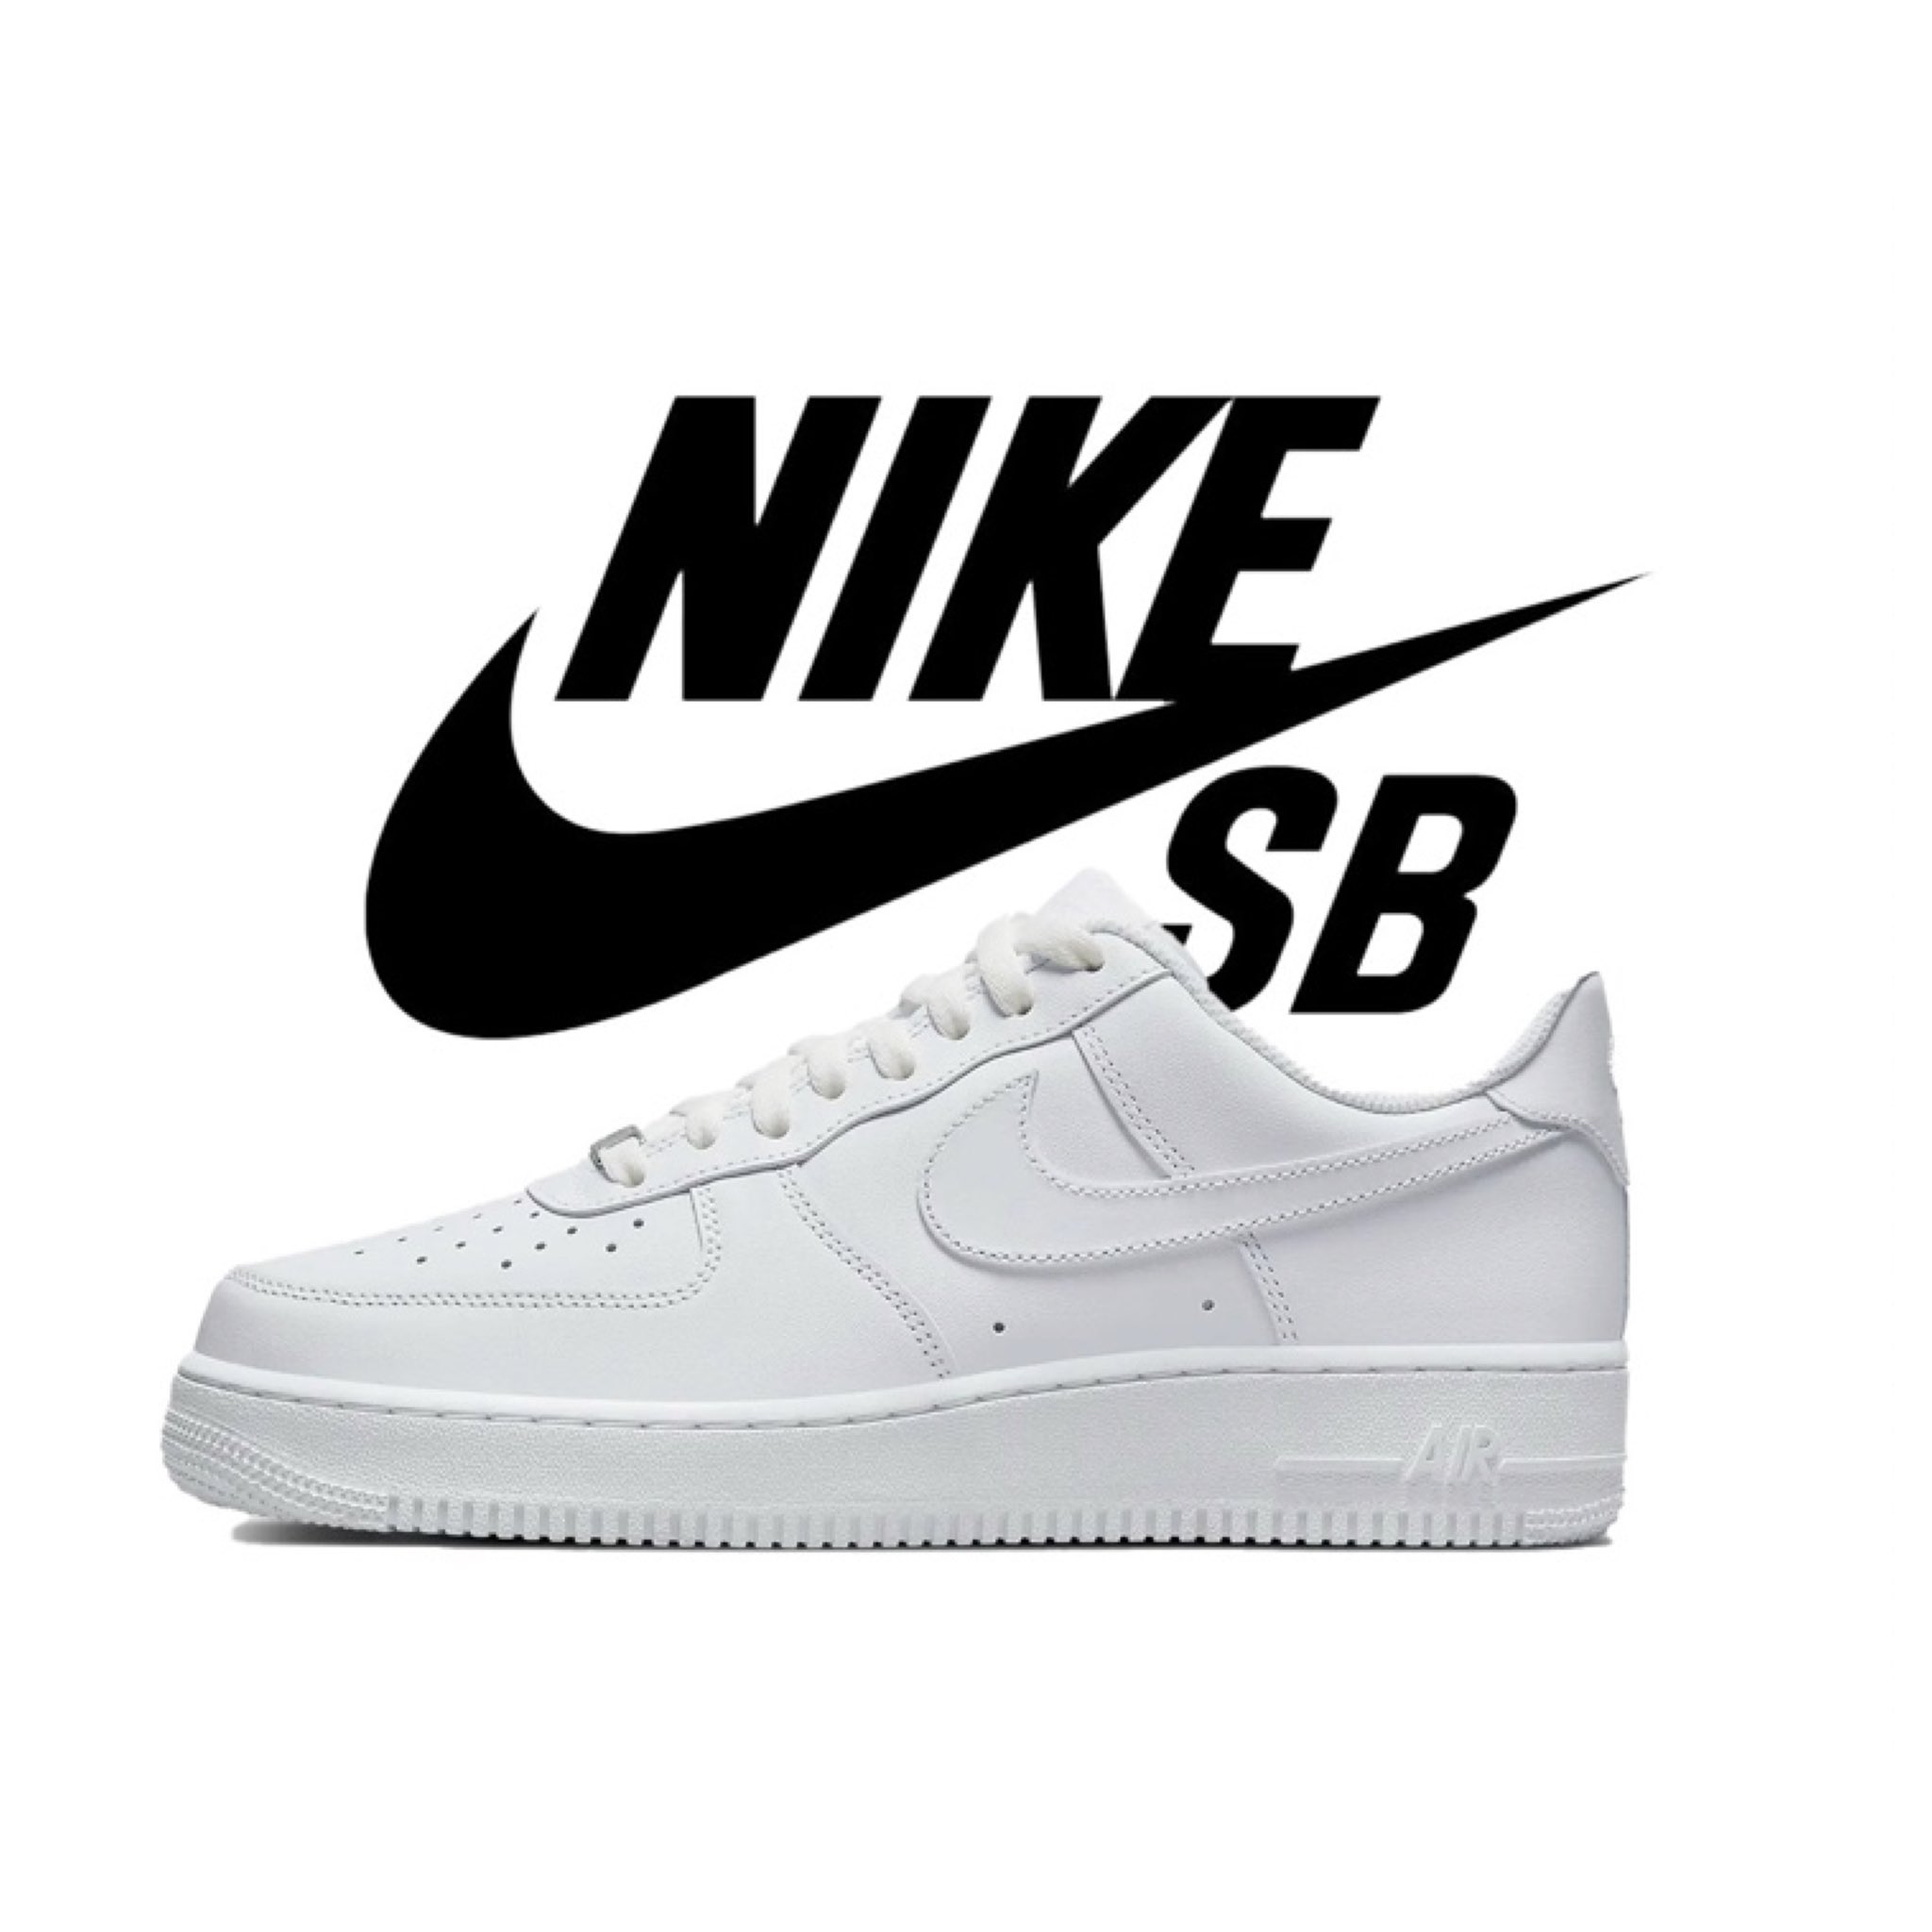 Nike SB × NIKE AIR FORCE 1 が発売へ